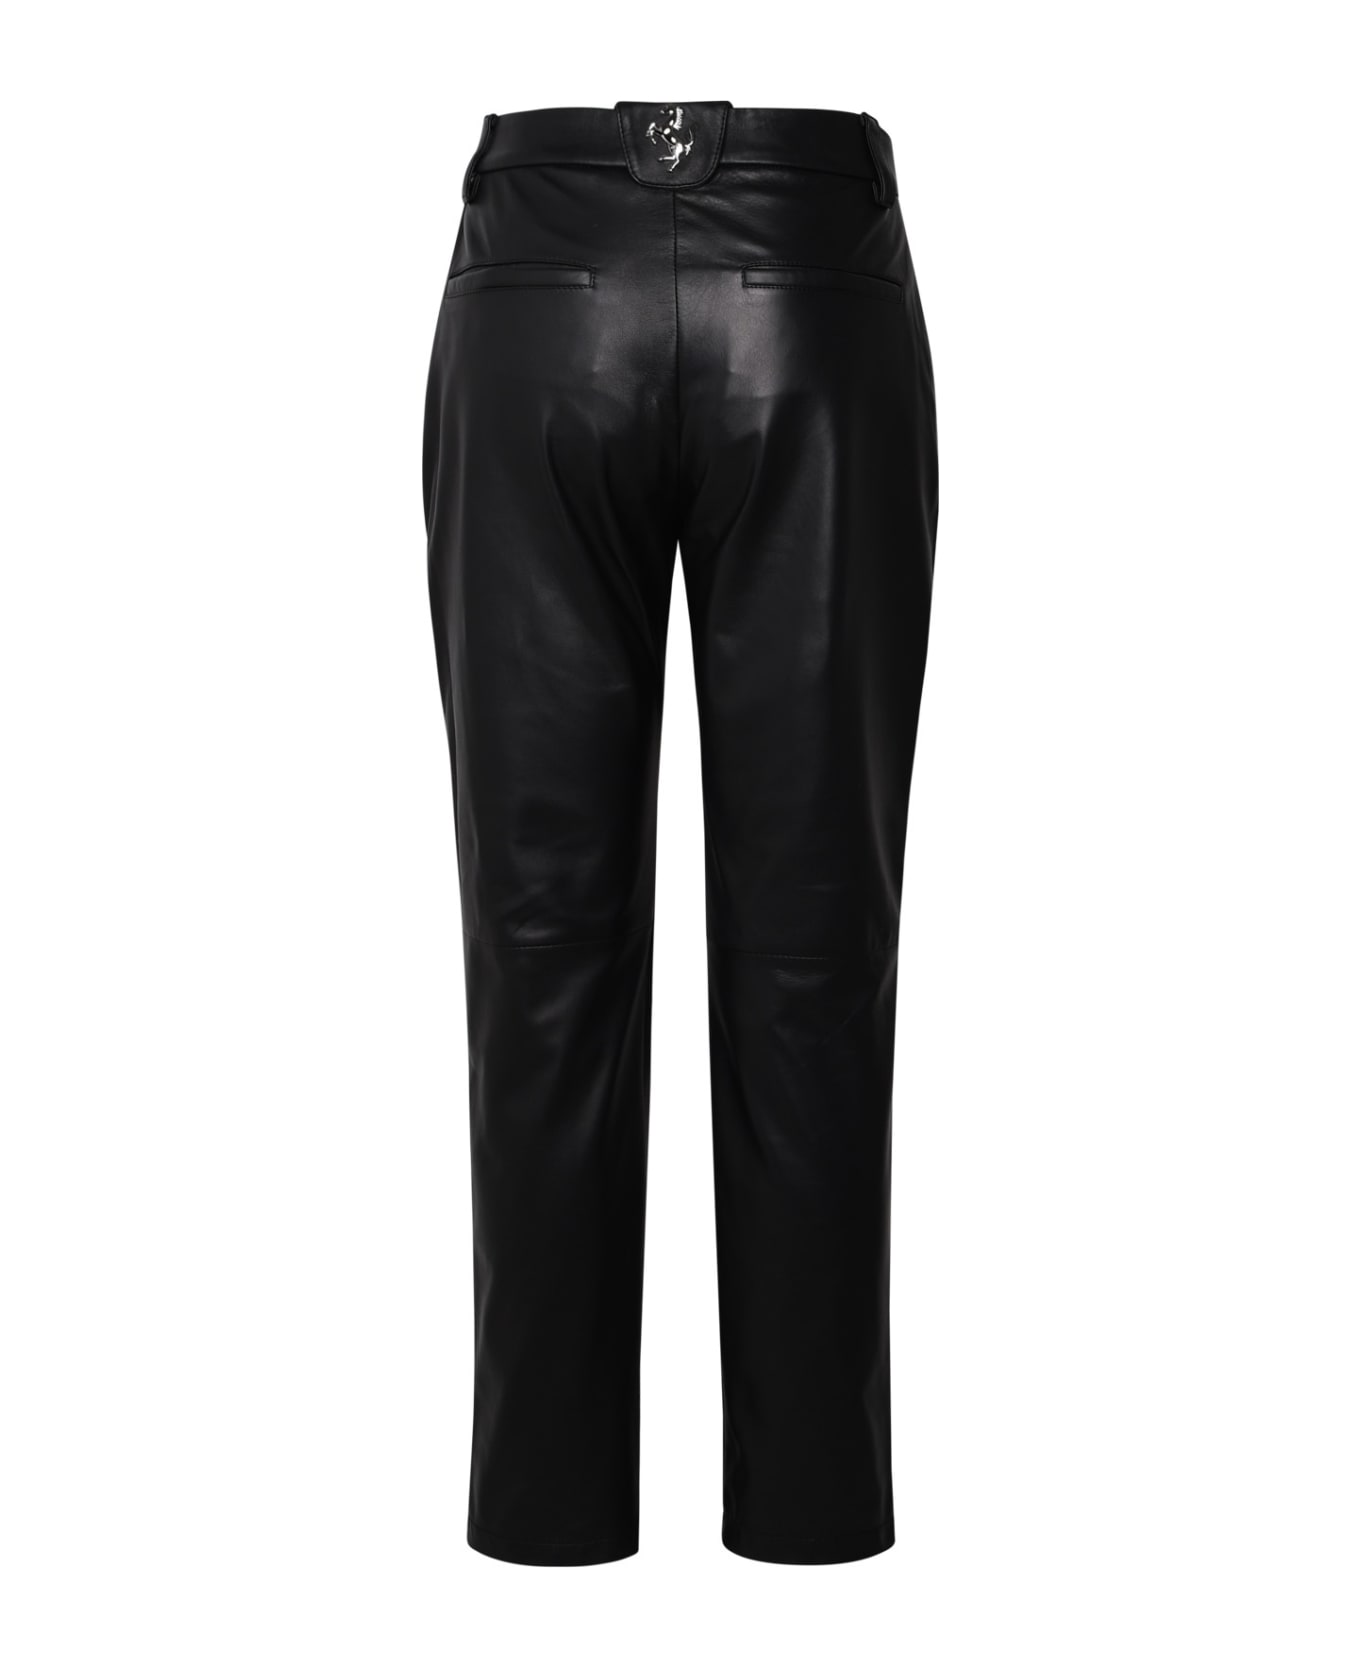 Ferrari Black Leather Pants - Black